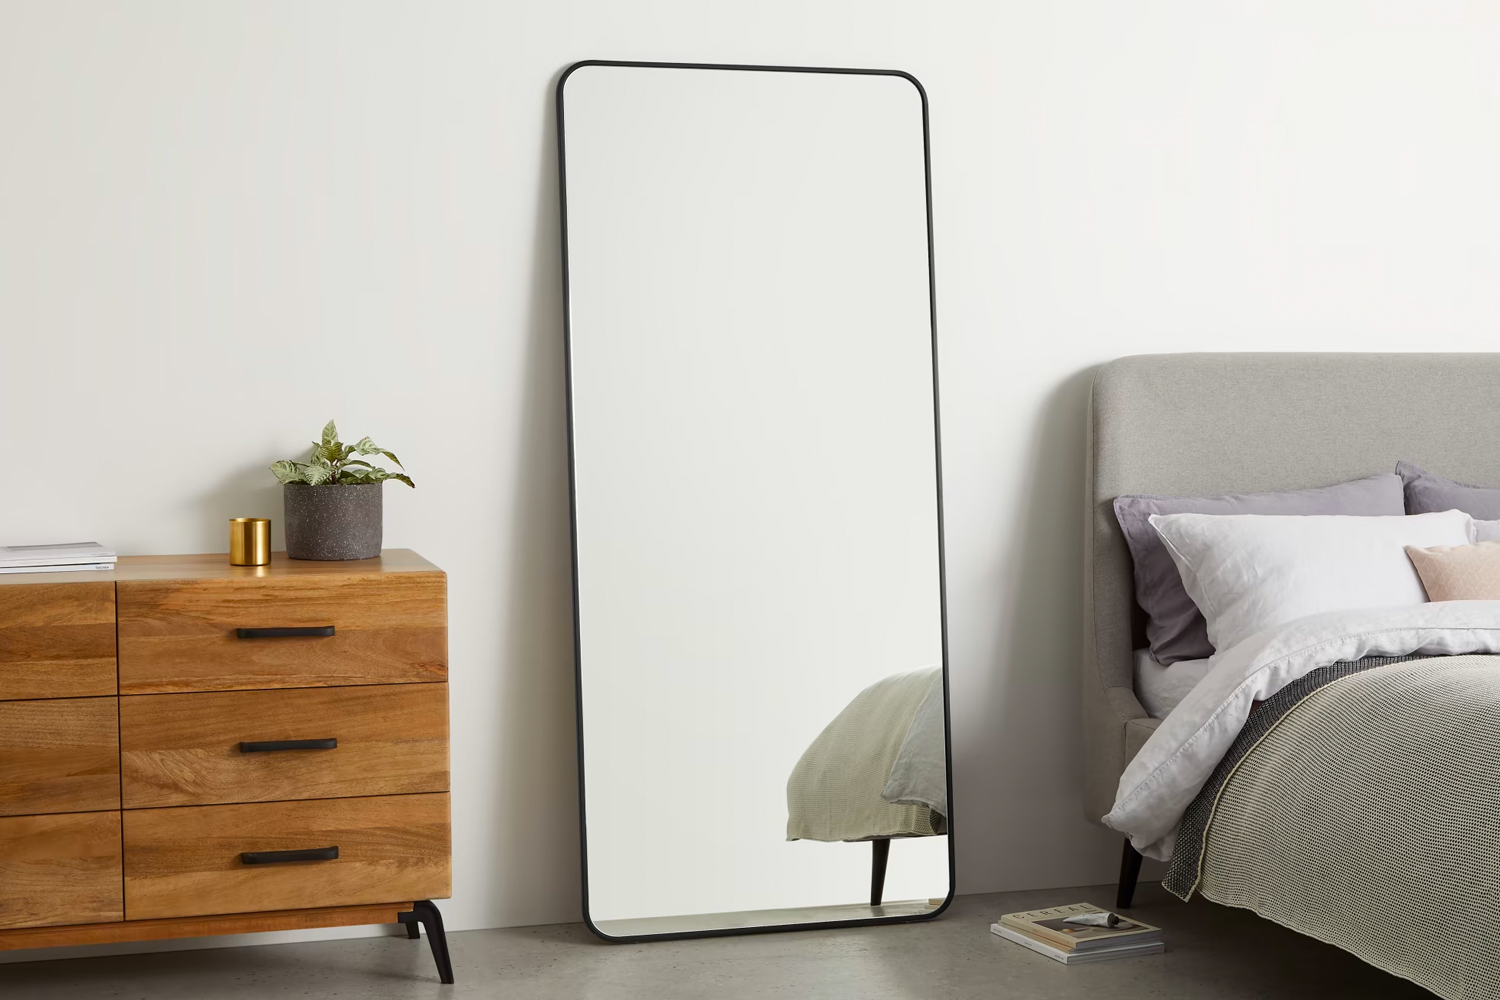 De Alana spiegel voegt het wow-factor toe aan je slaapkamer en is daarom een prachtige aanvulling voor je slaapkamerinterieur.